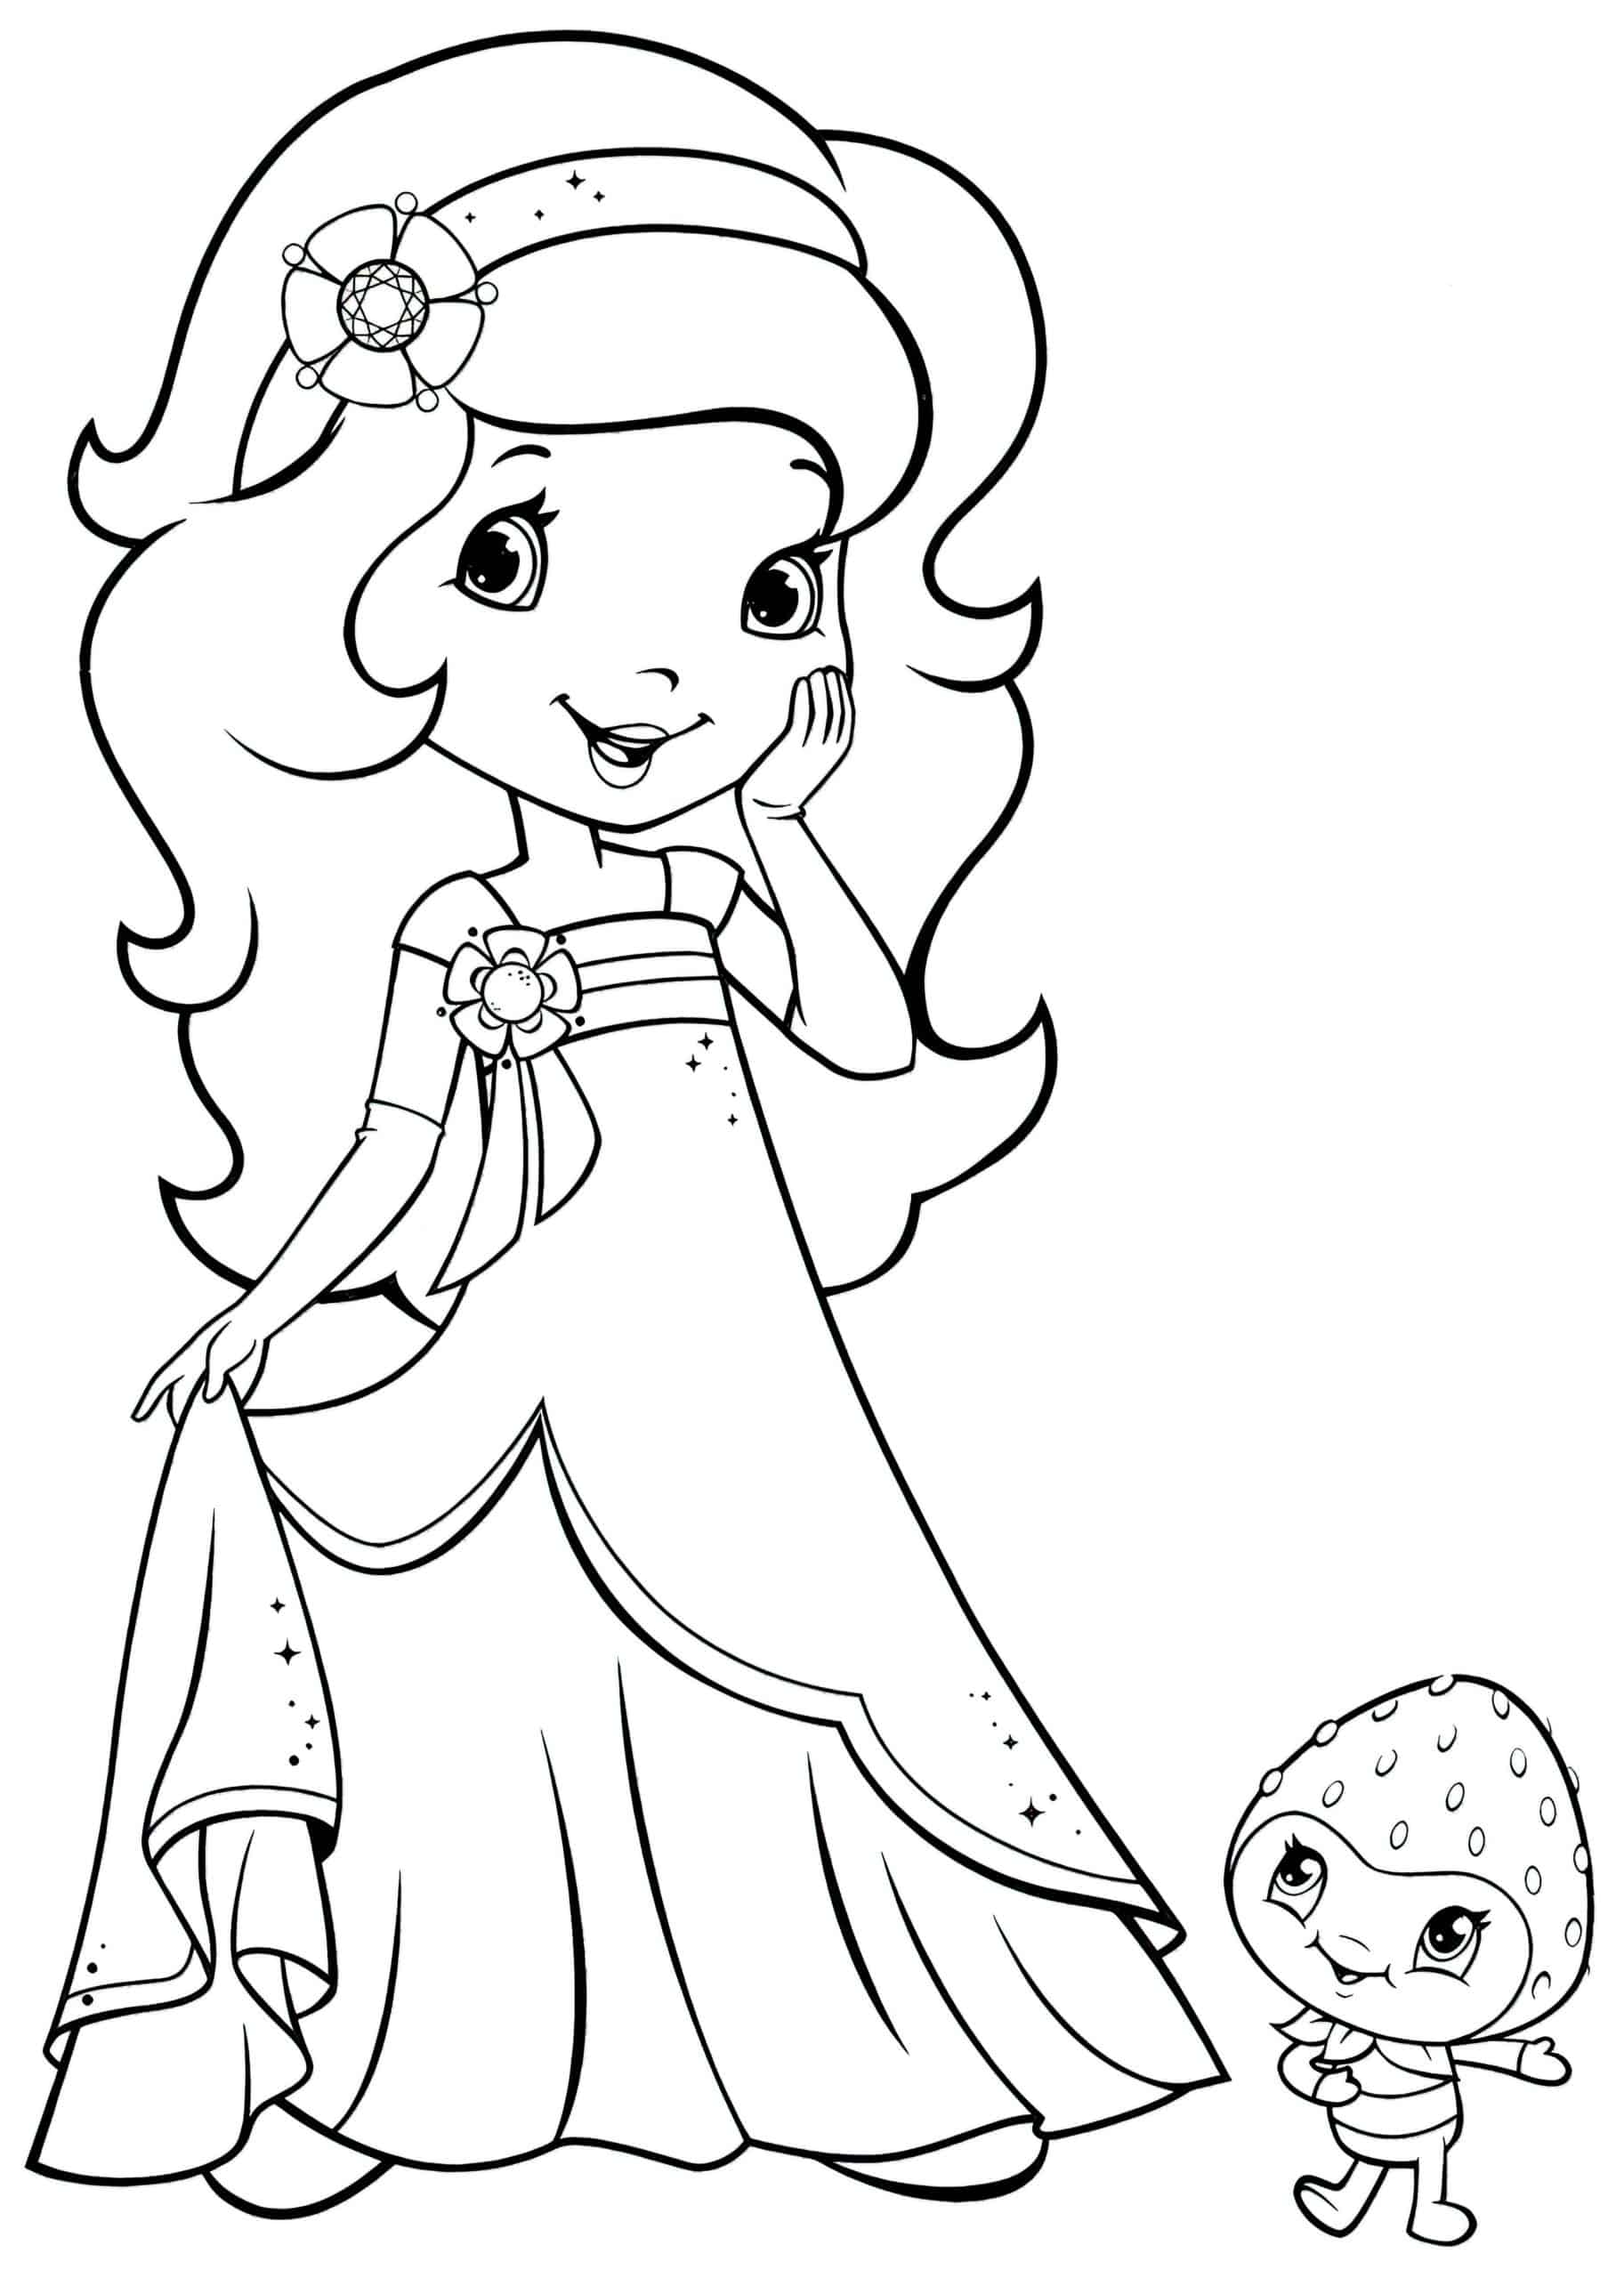 דף צביעה הנסיכה לימון עם תותית